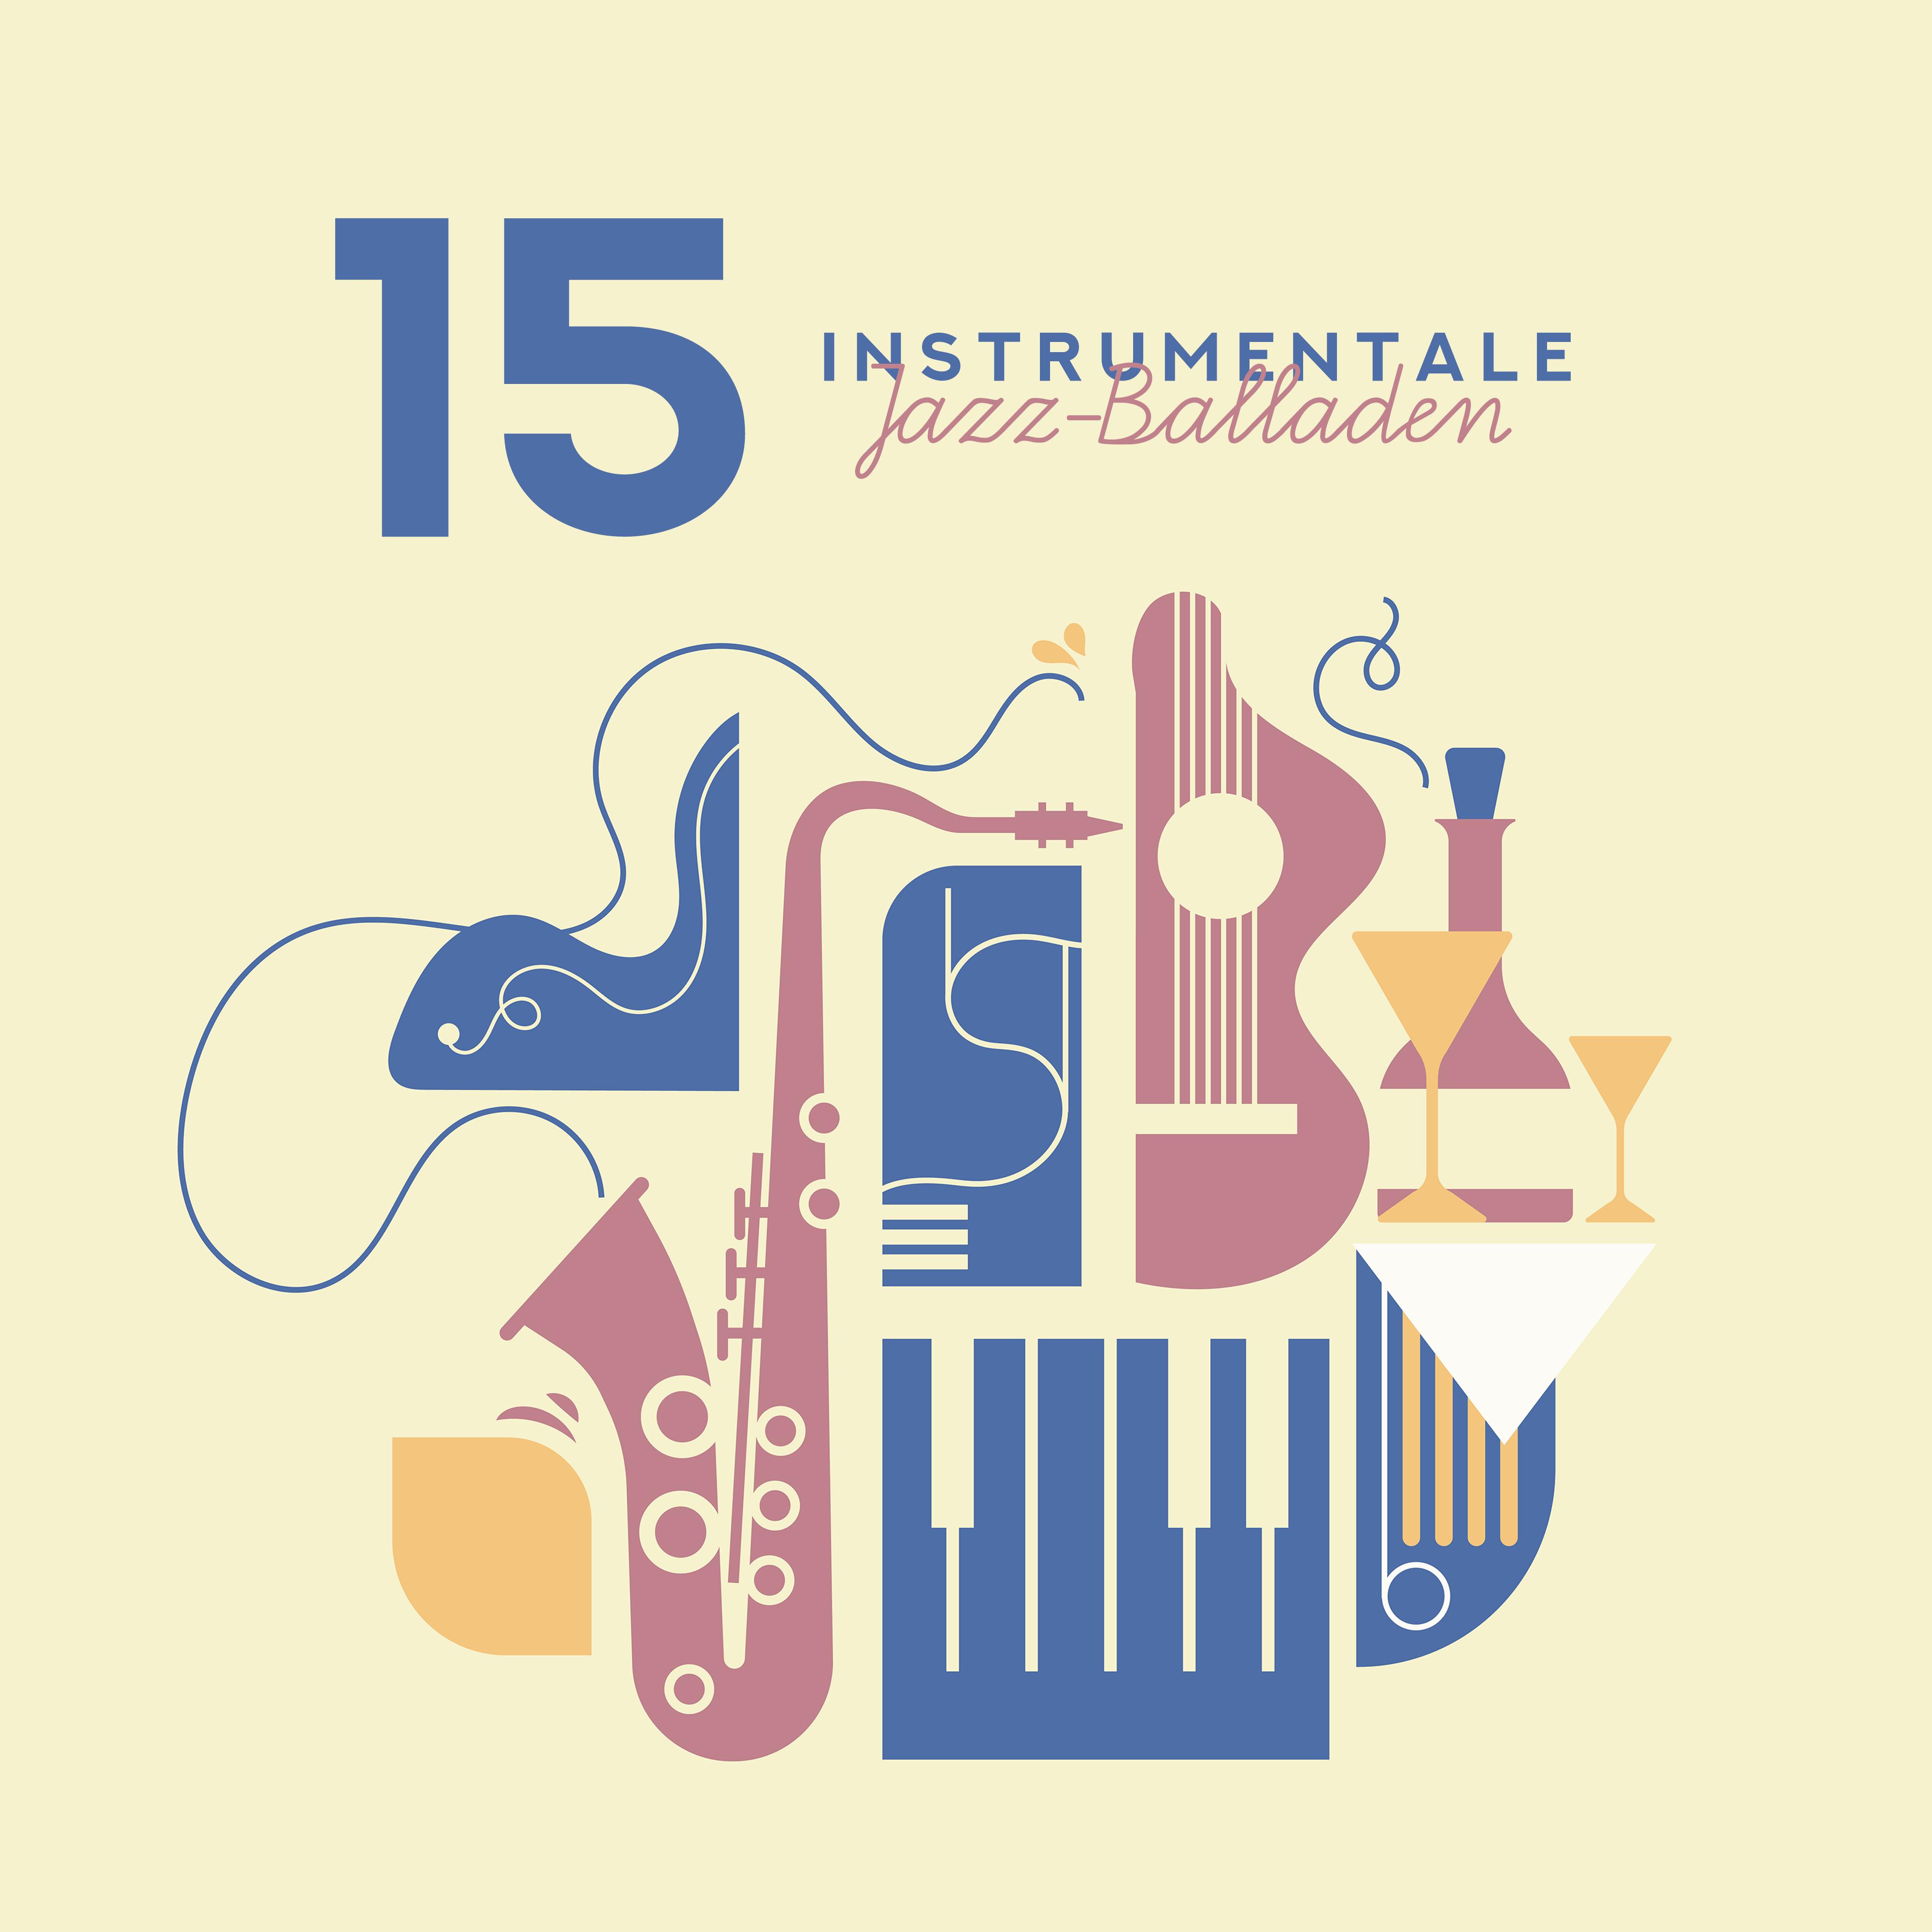 15 Instrumentale Jazz-Balladen